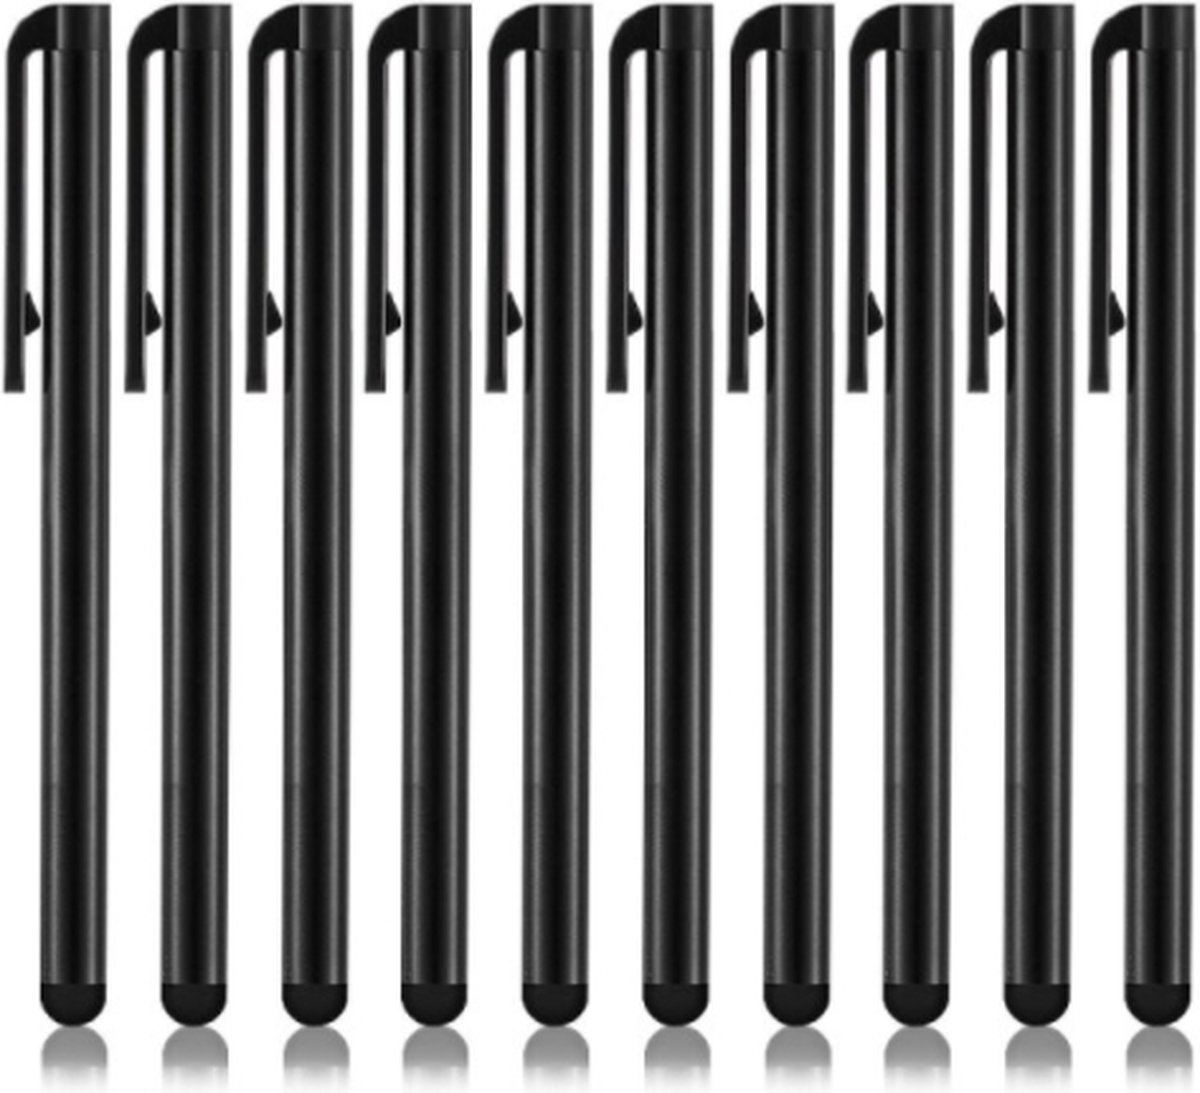 AFECTO® set van 10 stuks stylus pen | zwart | voor Tablet, Smartphone en pc